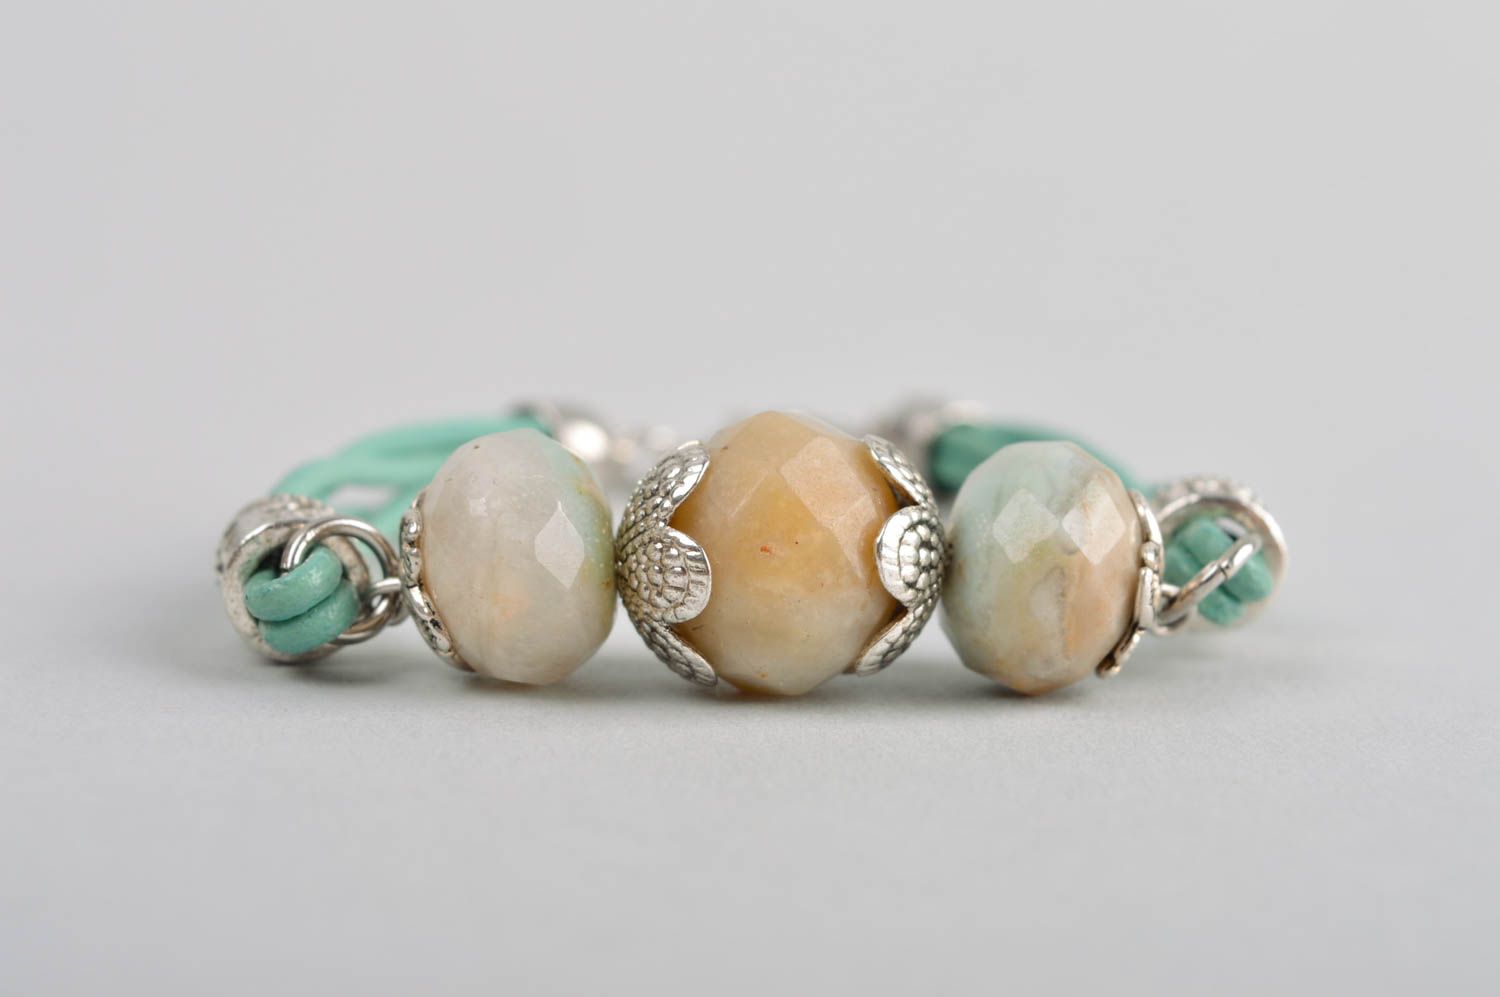 Handmade gemstone bracelet leather bracelet beaded bracelet designs gift ideas photo 3